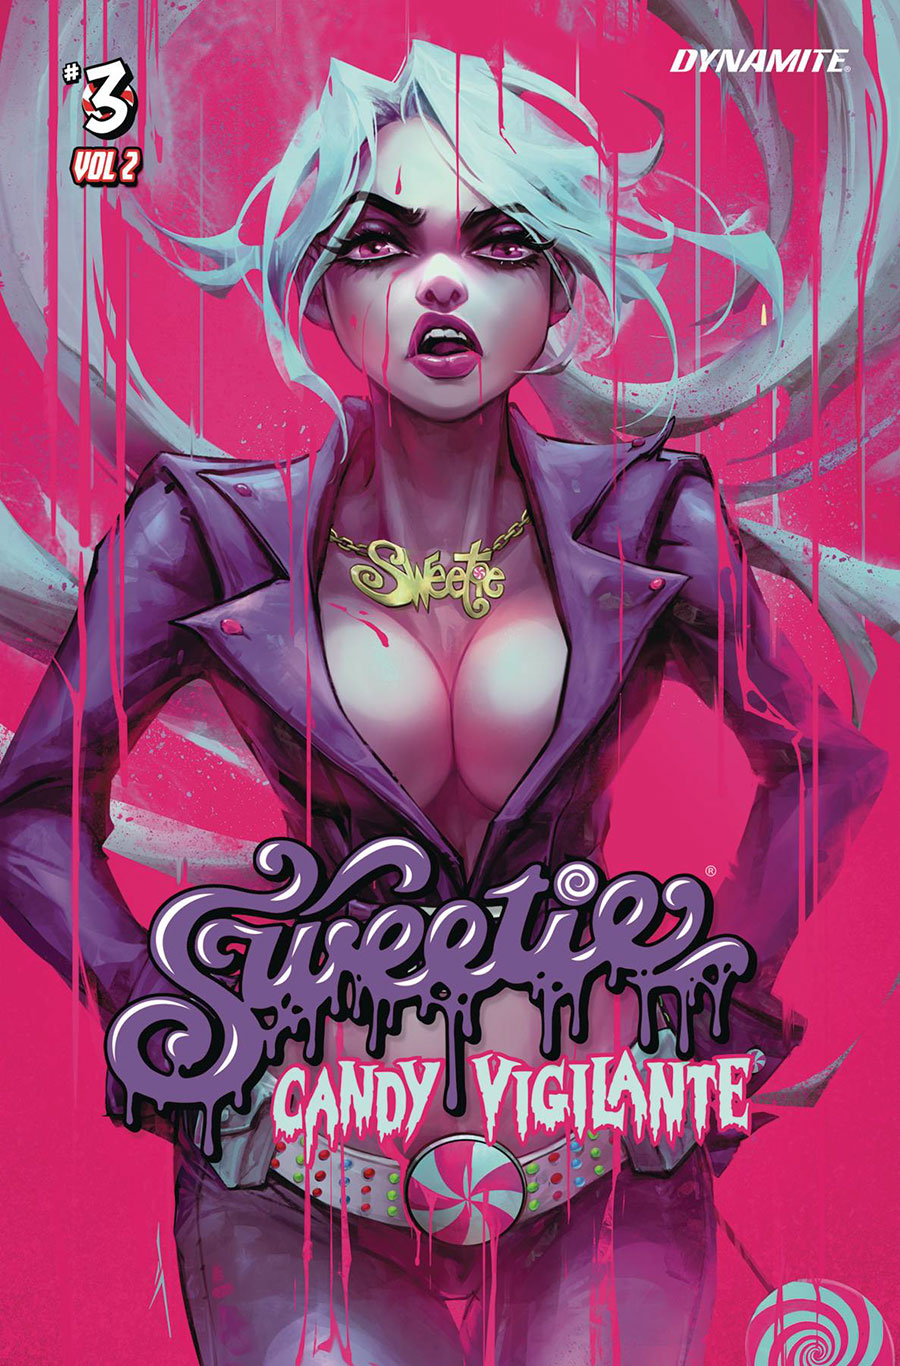 Sweetie Candy Vigilante Vol 2 #3 Cover A Regular Ivan Tao Cover